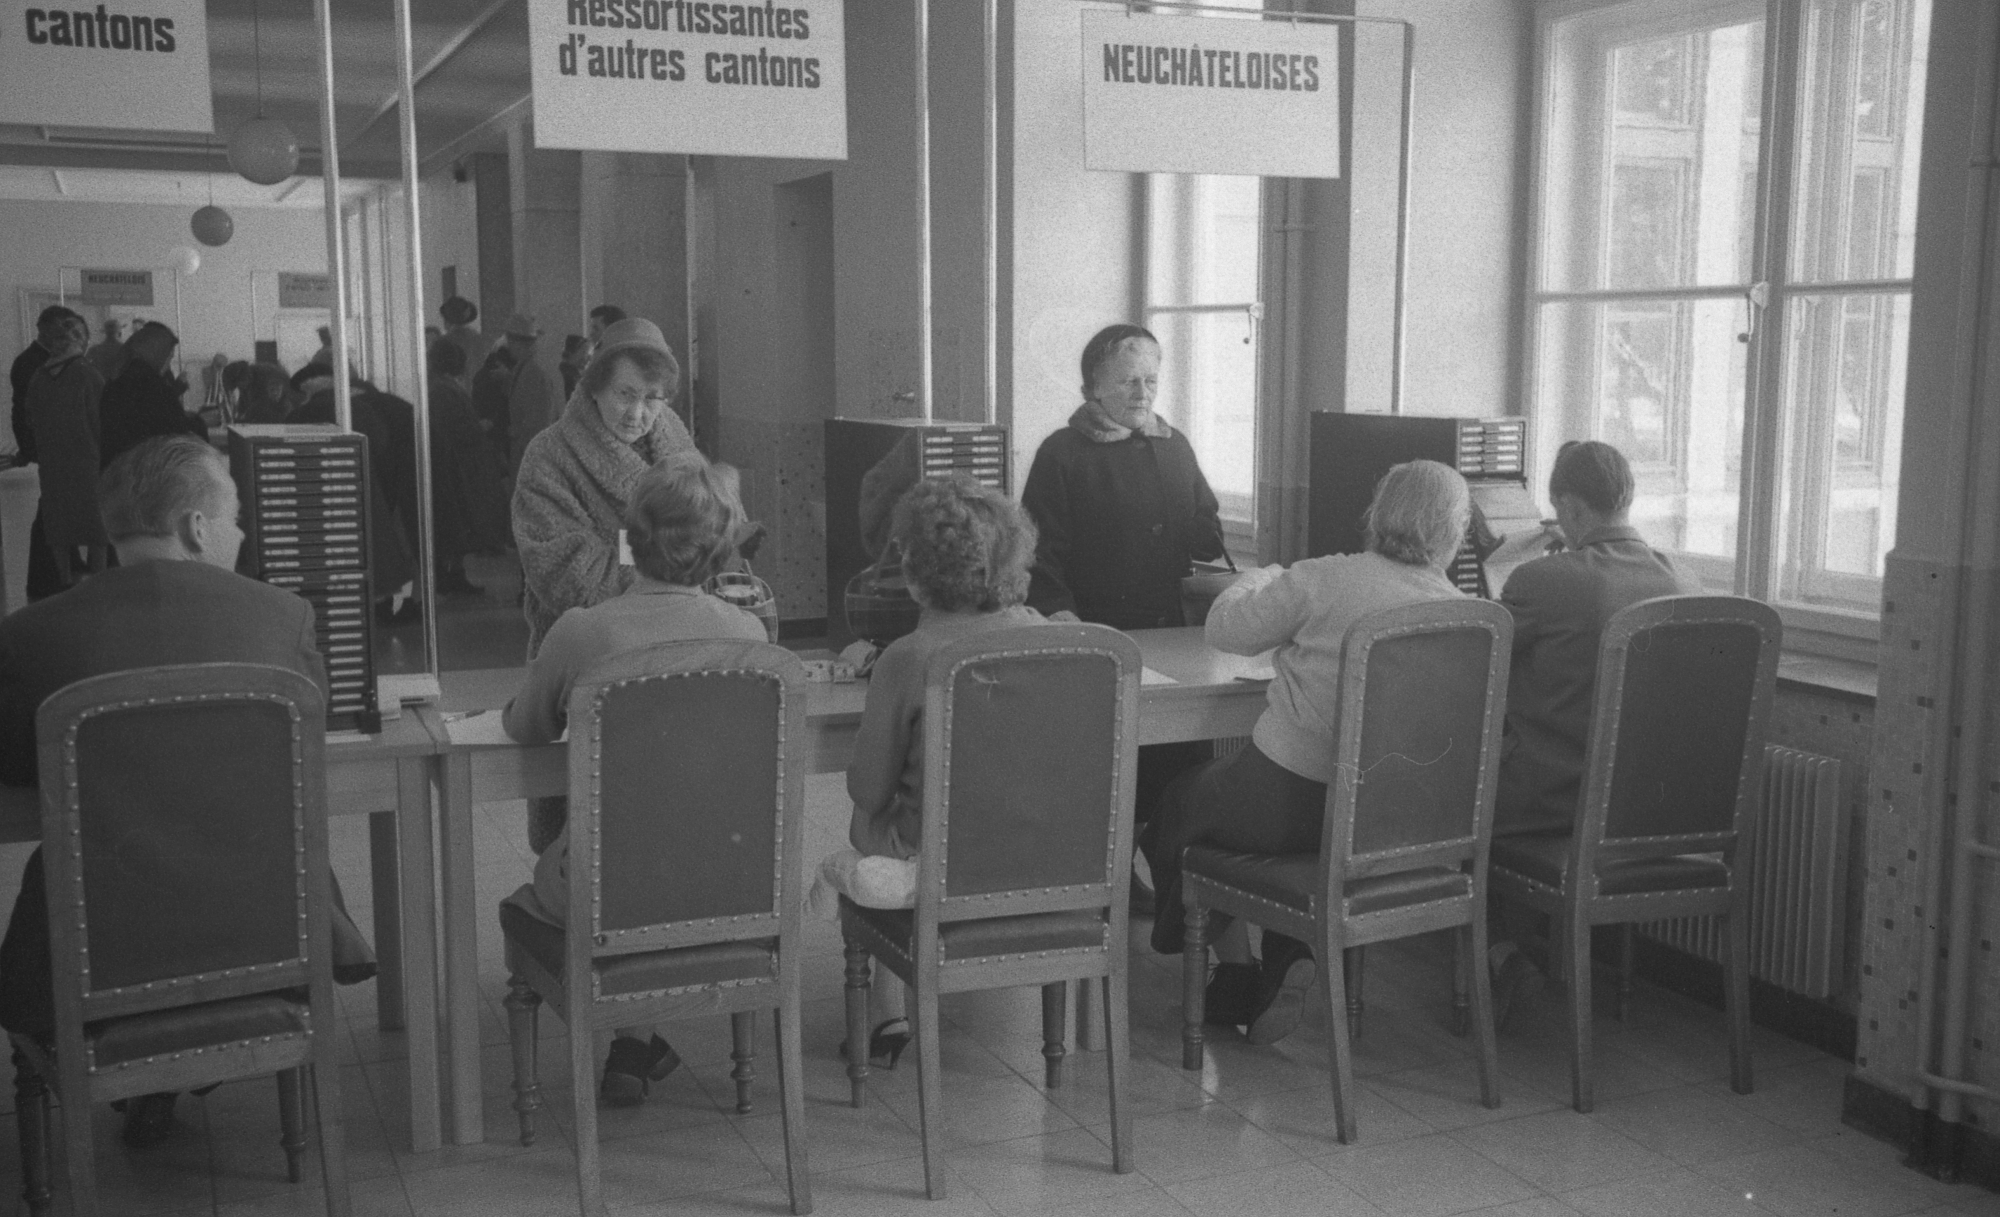 Au printemps 1960, les Neuchâteloises ont pu voter pour la première fois, ici à La Chaux-de-Fonds.